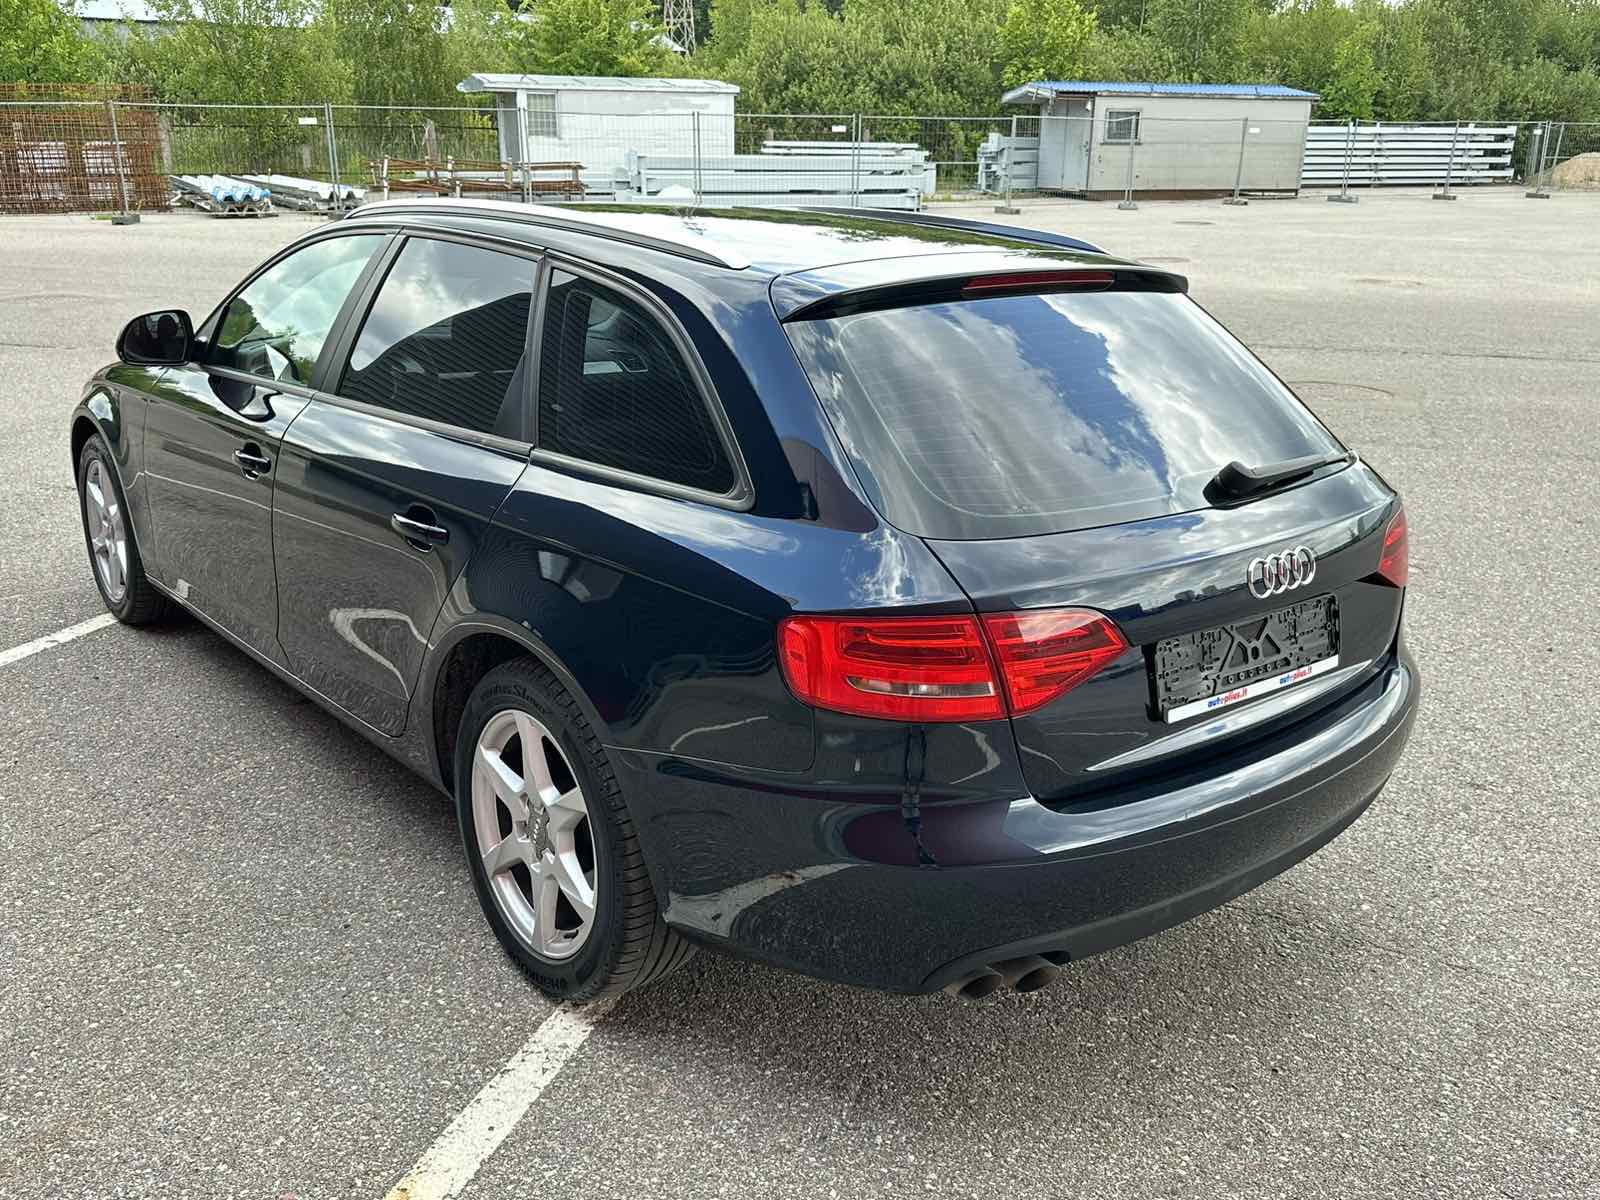 Audi A4 2.0l., universalas